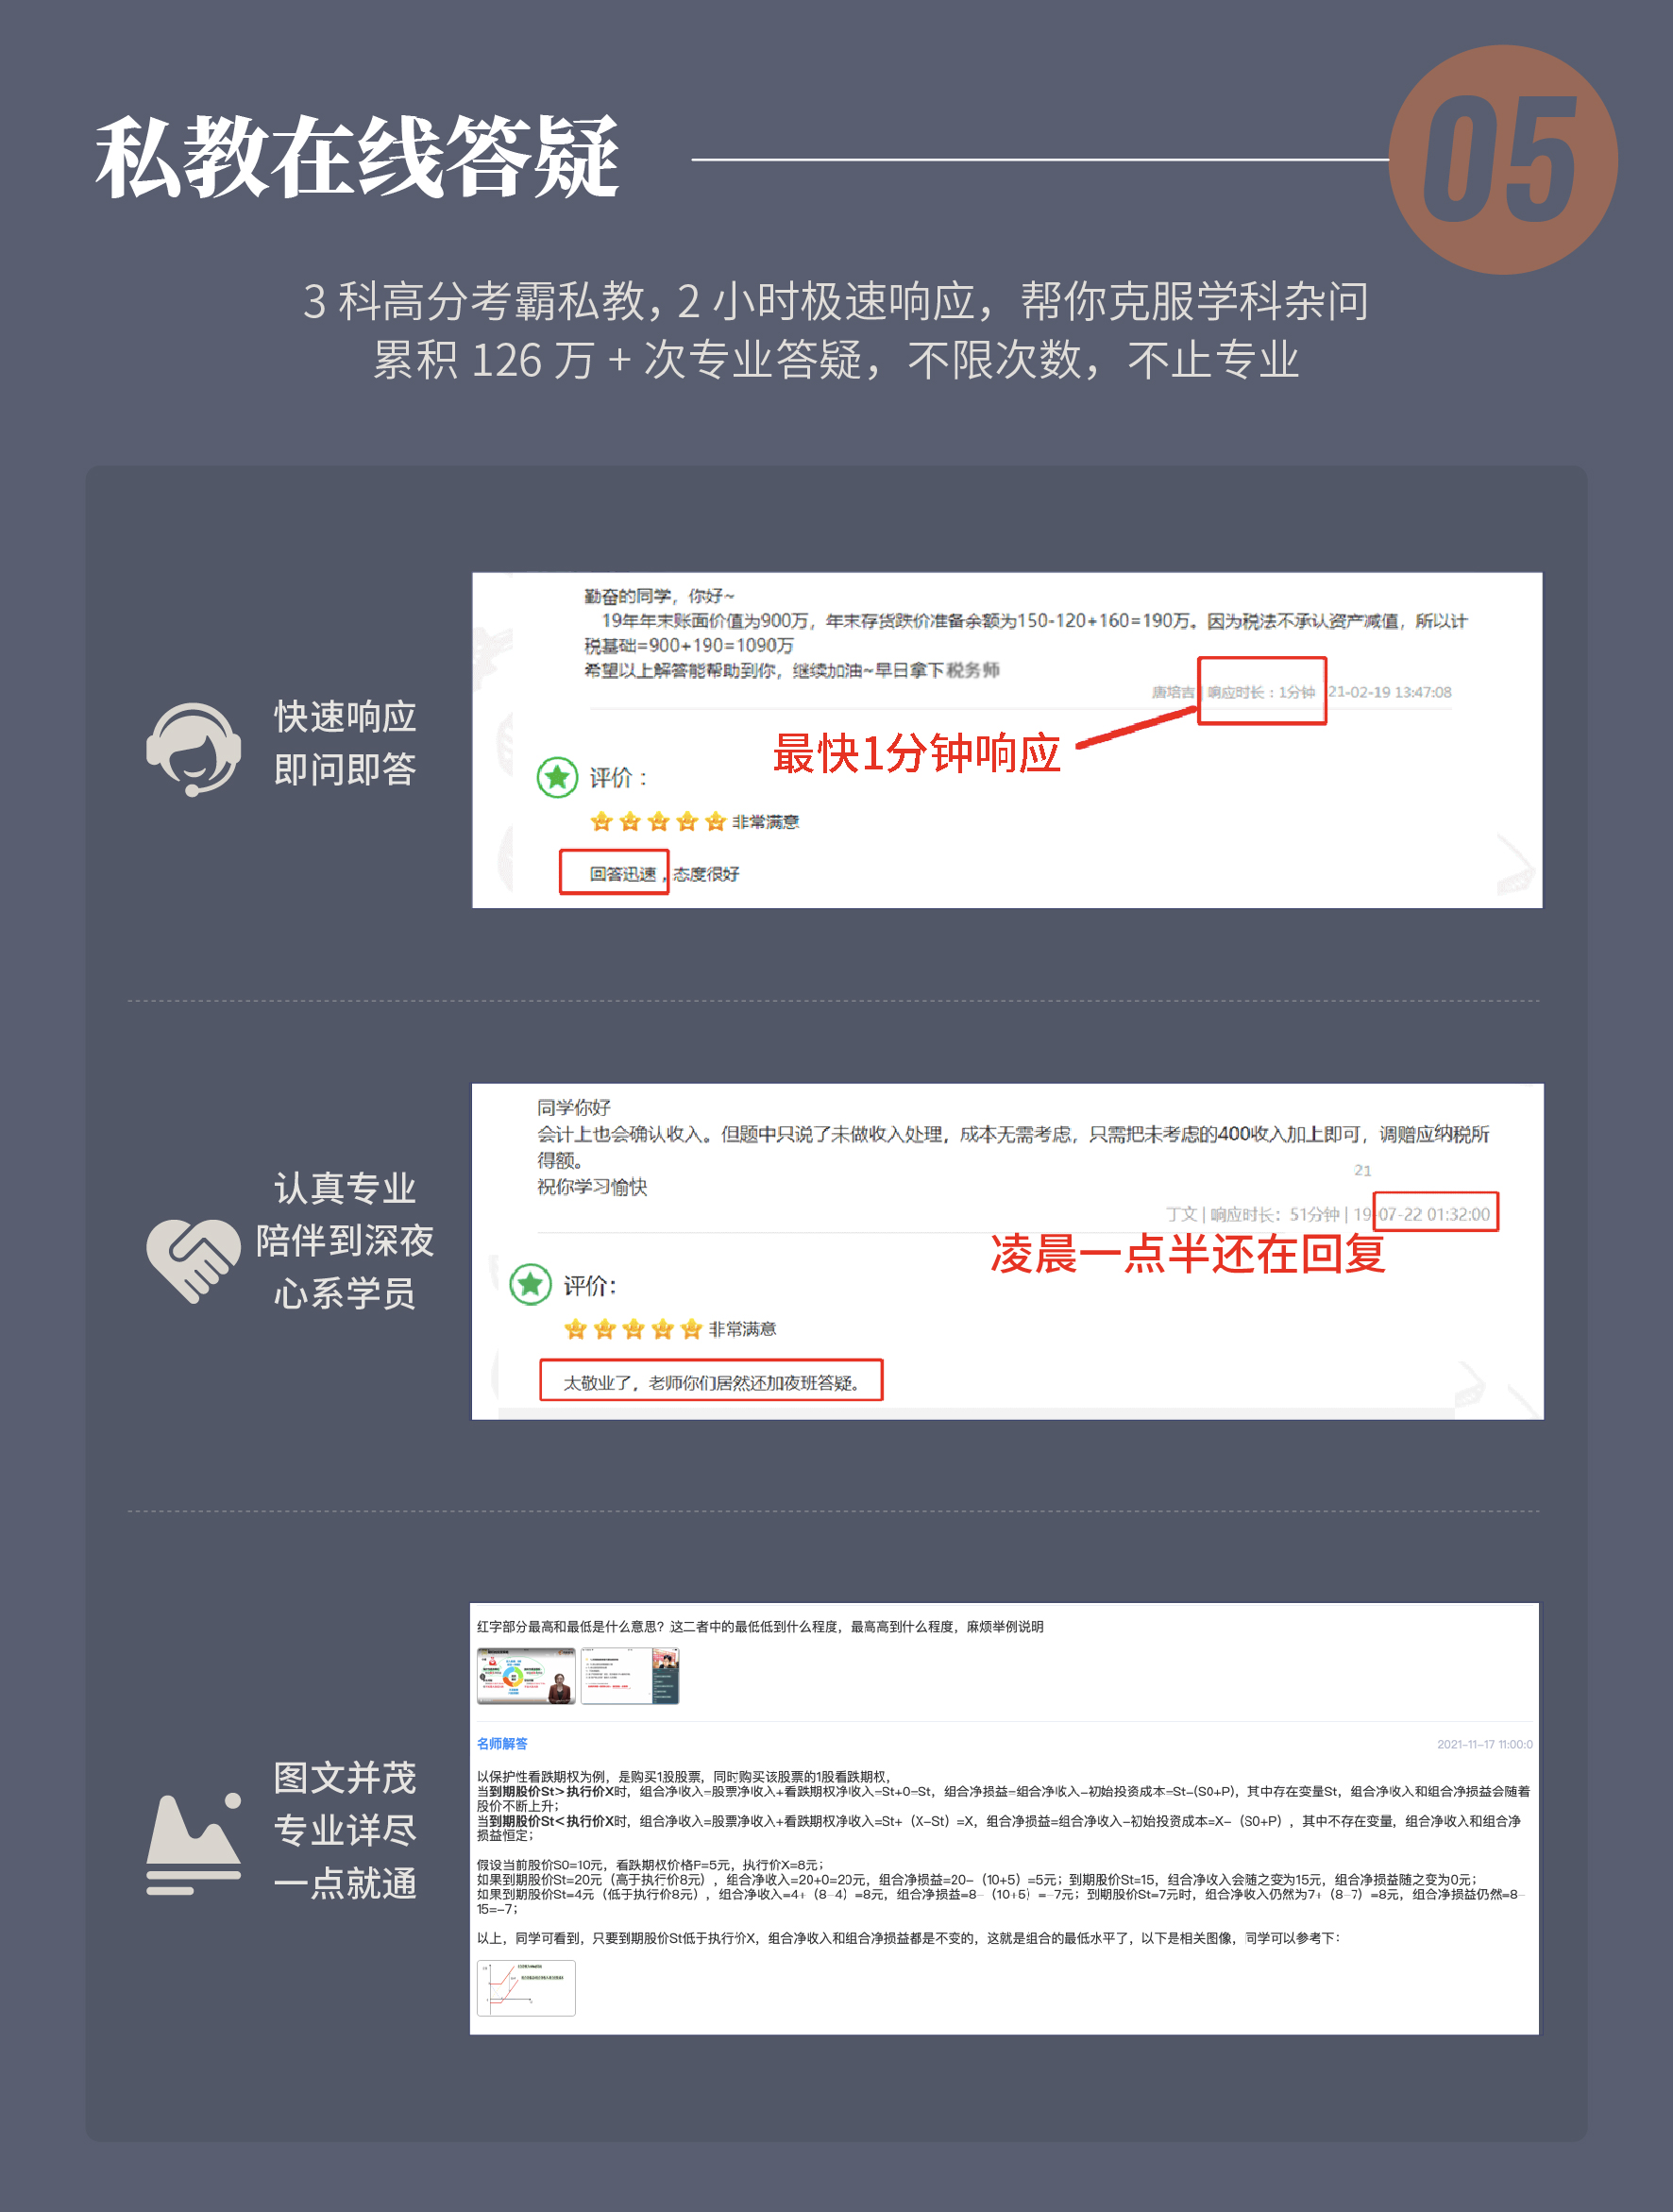 https://simg01.gaodunwangxiao.com/uploadfiles/product-center/202210/31/d30a8_20221031100618.jpg